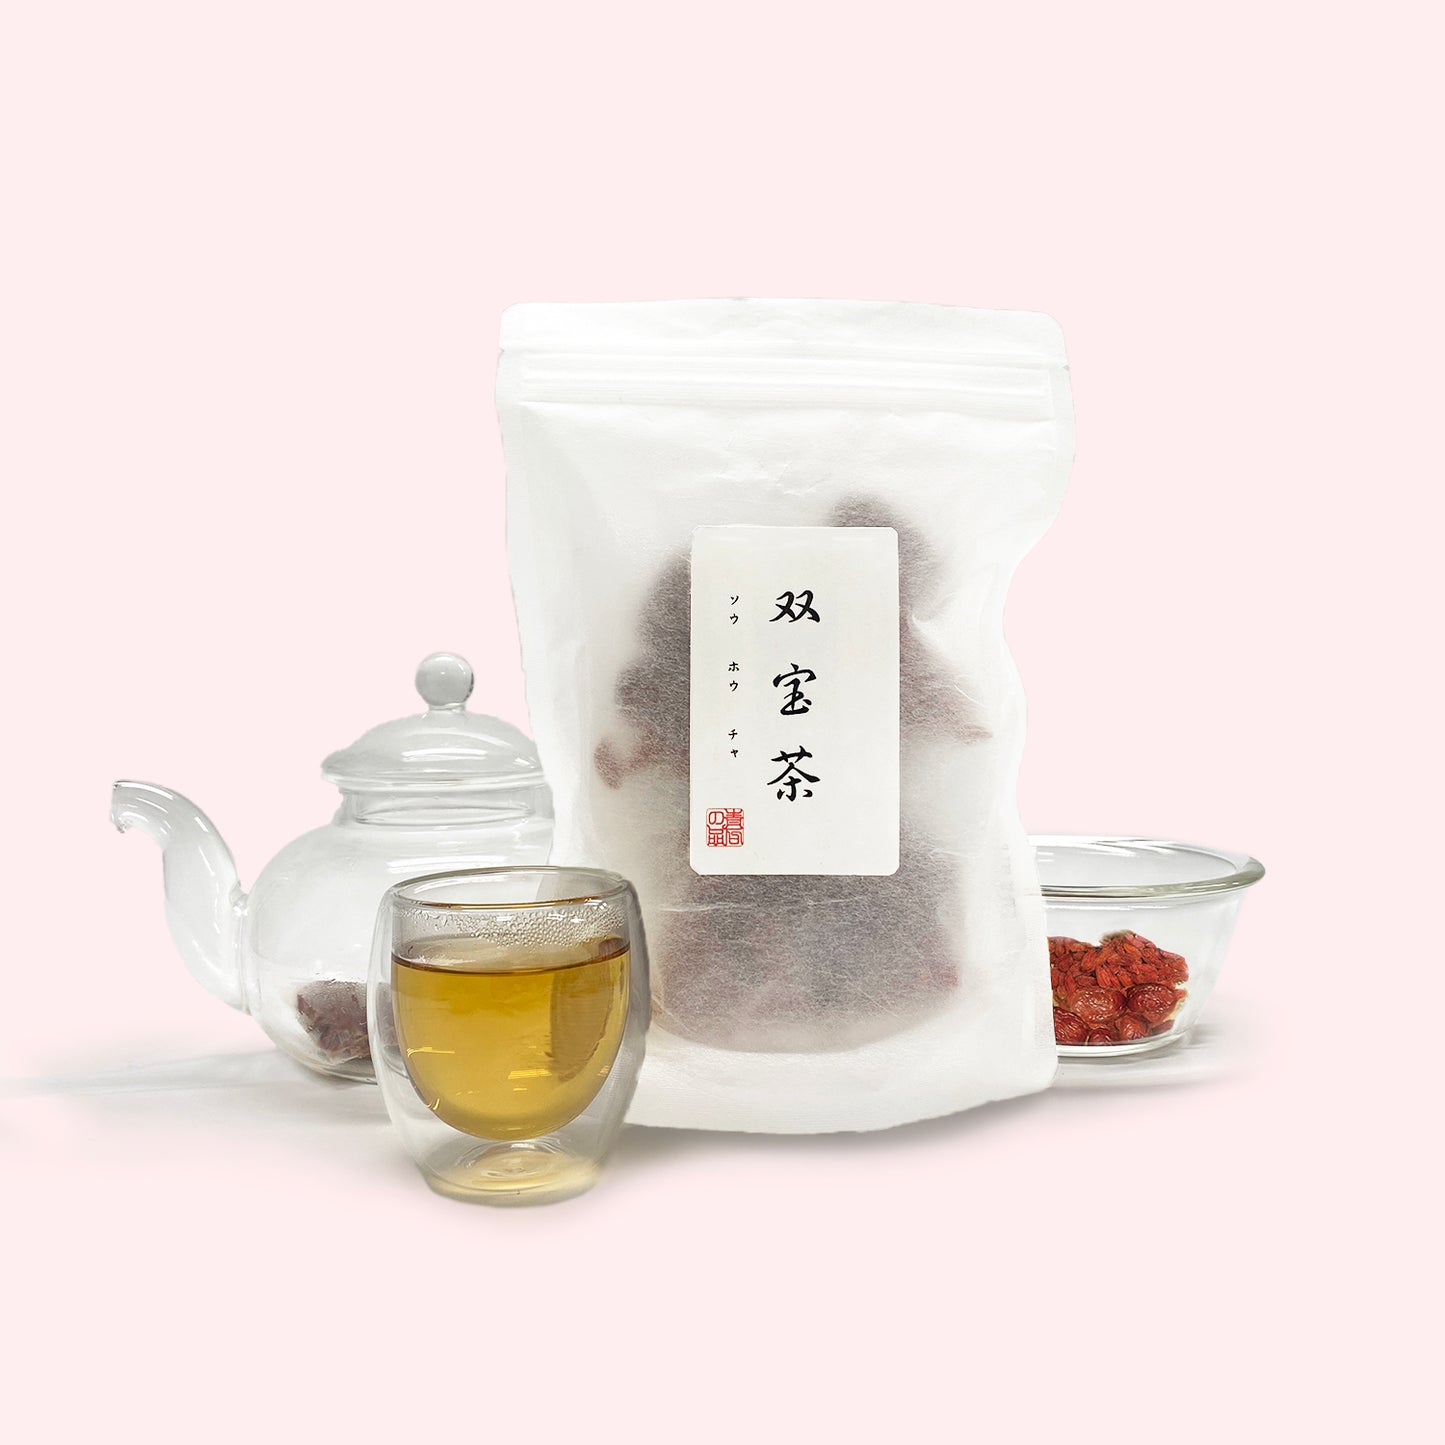 双宝茶(ナツメ・クコシ)